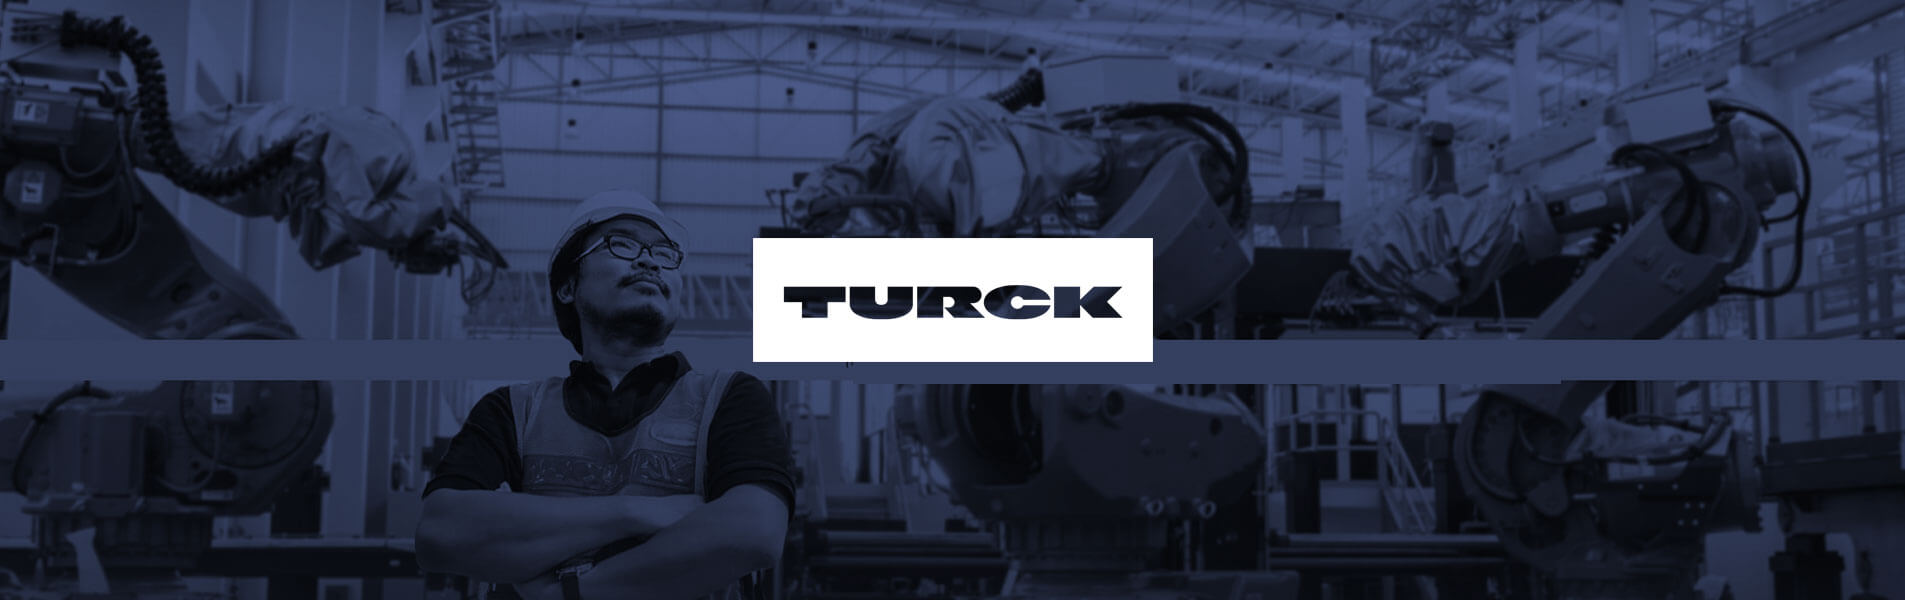 Turck HMI / PLC controls